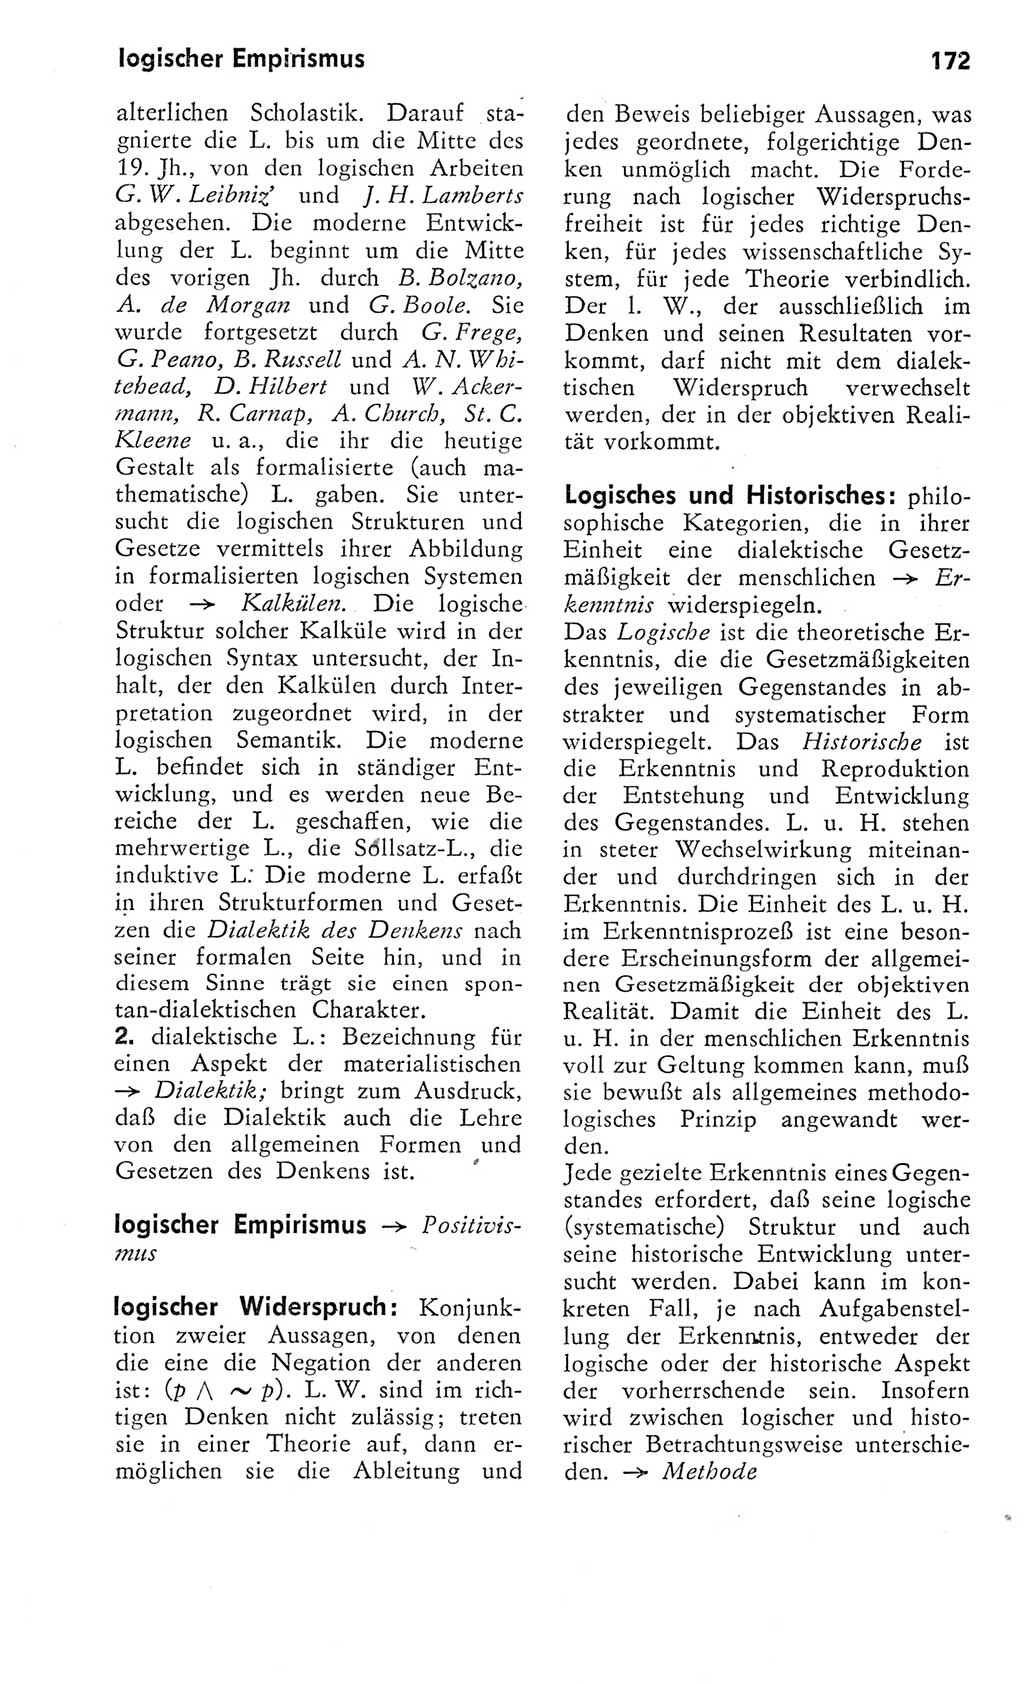 Kleines Wörterbuch der marxistisch-leninistischen Philosophie [Deutsche Demokratische Republik (DDR)] 1975, Seite 172 (Kl. Wb. ML Phil. DDR 1975, S. 172)